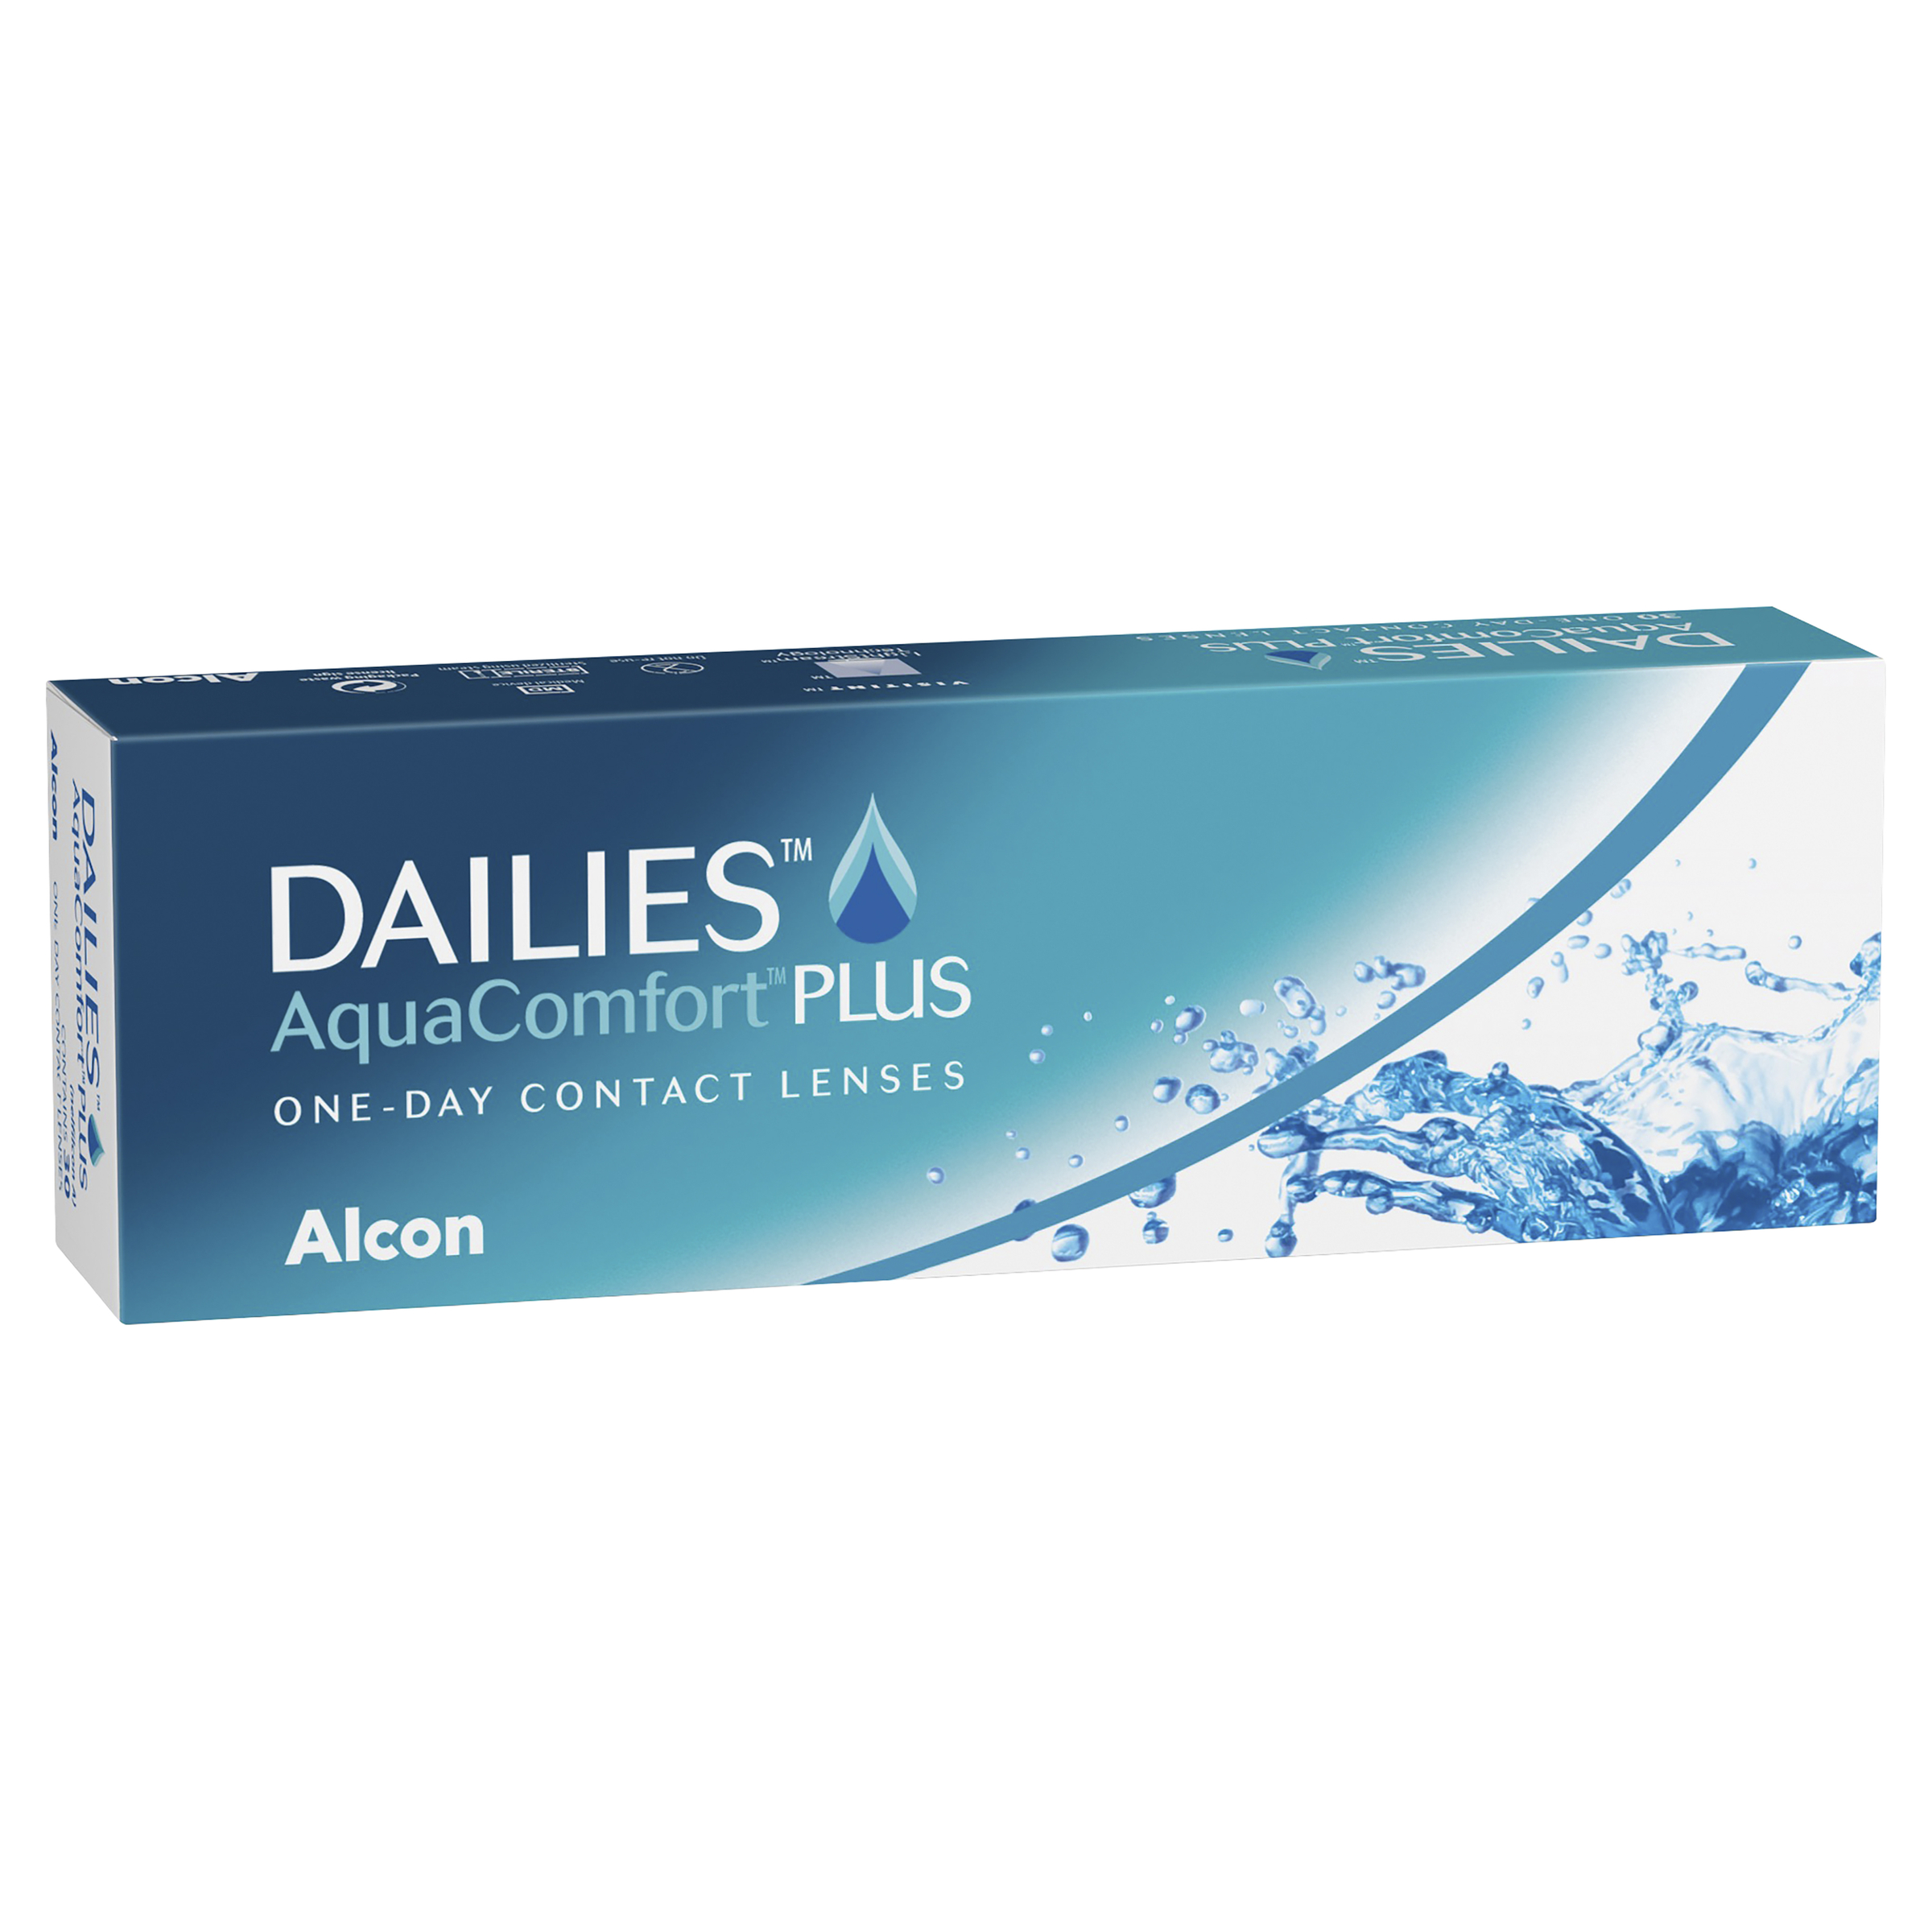 Focus Dailies Aqua Comfort Plus Review